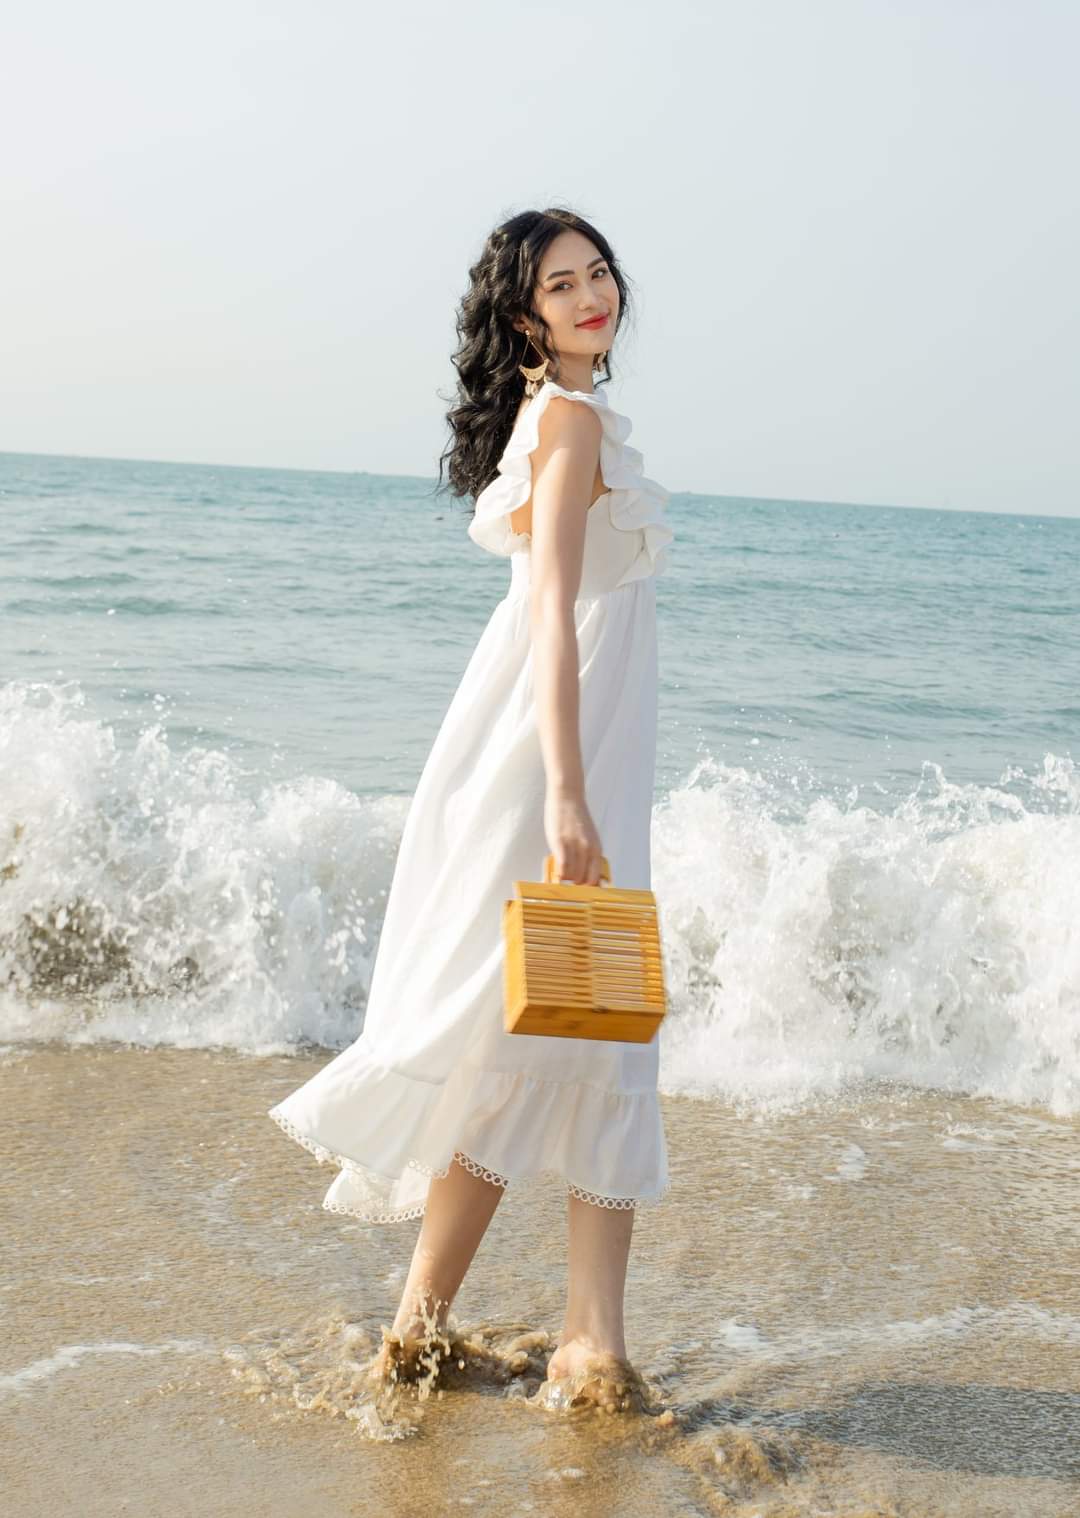 Ba kiểu váy đi biển tôn dáng của mỹ nhân Việt - Ngôi sao